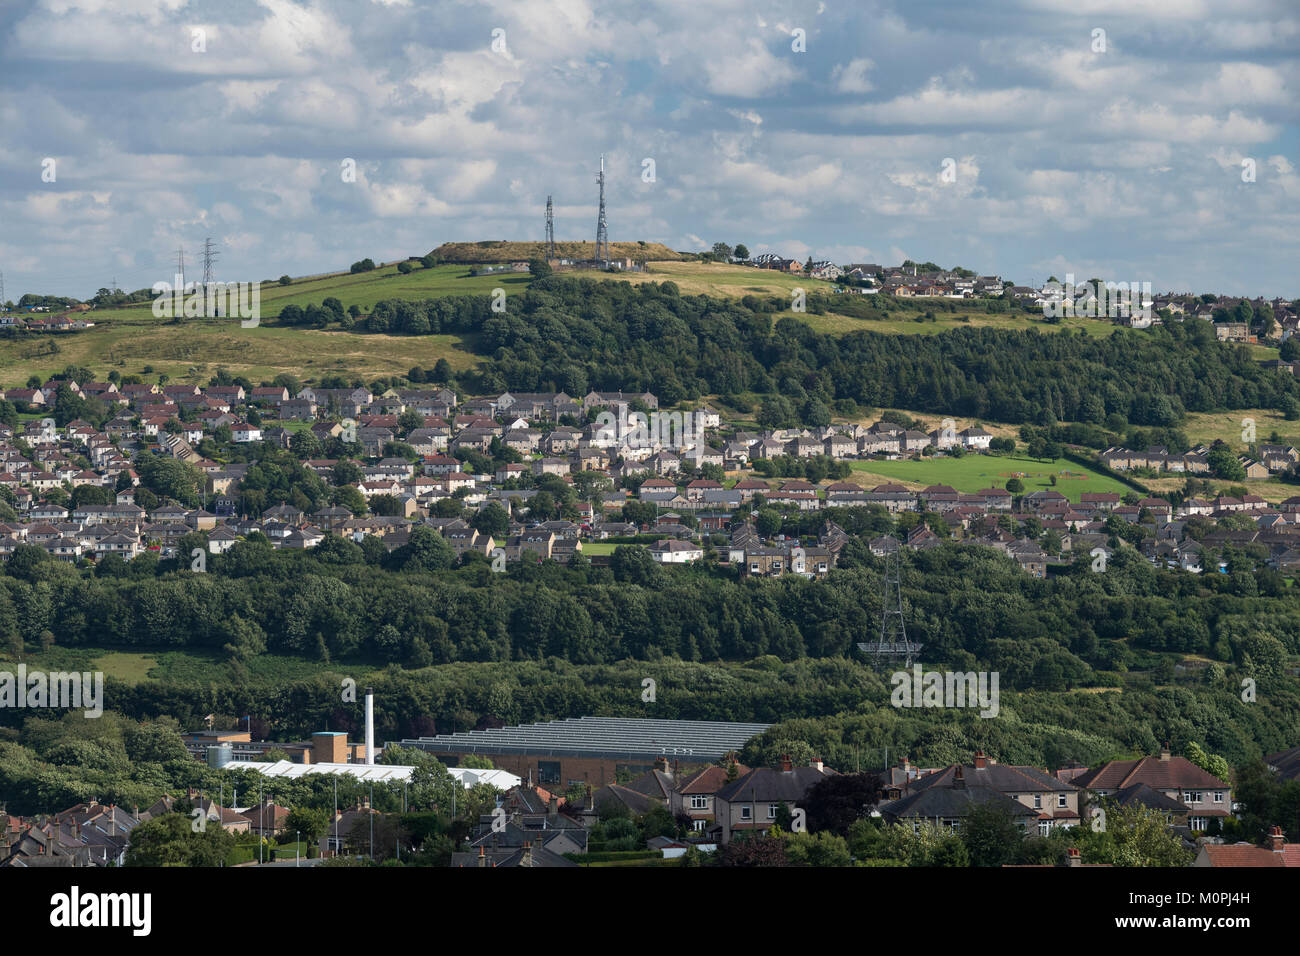 Secteur suburbain de colline avec le logement, des champs verts, des bois & transmetteurs sur sunny day - Shipley & Wrose domaines de Bradford, West Yorkshire, GB, au Royaume-Uni. Banque D'Images